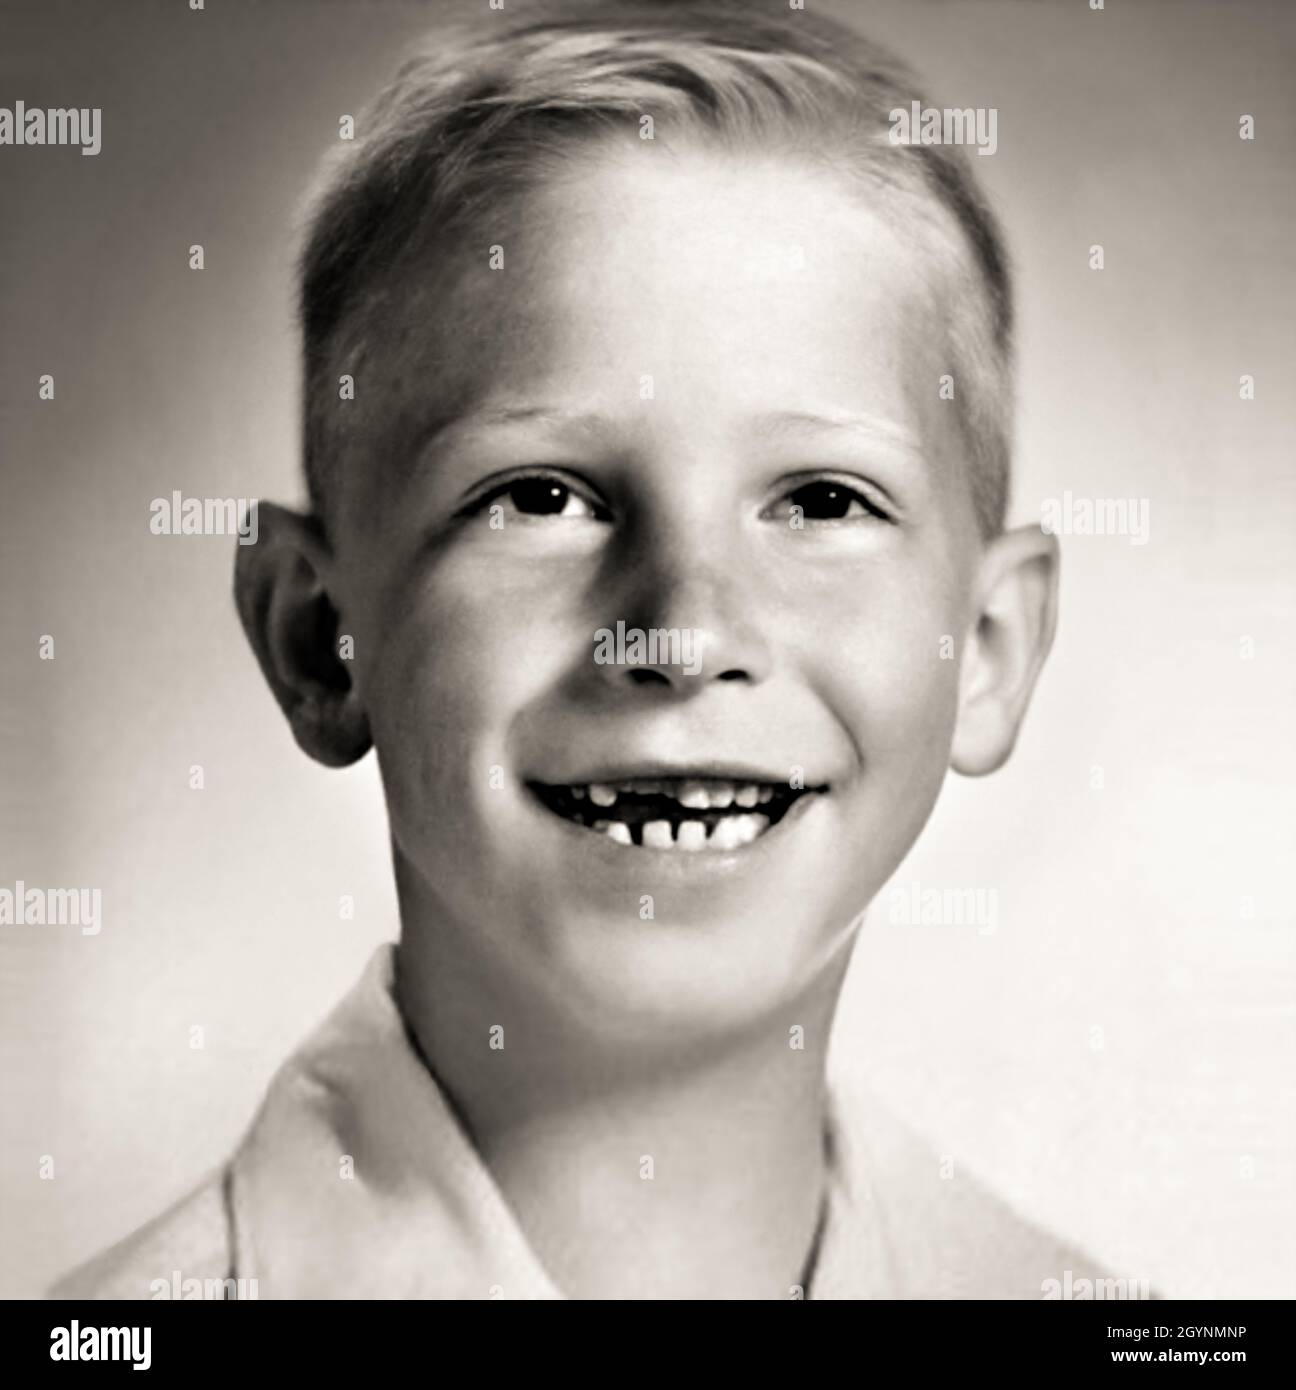 1962 CA, Etats-Unis : le célèbre BILL GATES ( bo​rn à Seattle, 28 octobre 1955​ ) quand était un jeune garçon de 7 ans .Photographe inconnu .Magnat américain , investisseur et propriétaire de médias fondateur de WINDOWS MICROSOFT Company .Photographe inconnu .- INFORMATICA - INFORMATICO - INFORMATIQUE - INFORMATIQUE - INVENTORE - INVENTEUR - HISTOIRE - FOTO STORICHE - TYCOON - personalità da bambino bambini da giovane - personnalité personnalités quand était jeune - INFANZIA - ENFANCE - BAMBINO - BAMBINI - ENFANTS - ENFANT --- ARCHIVIO GBB Banque D'Images